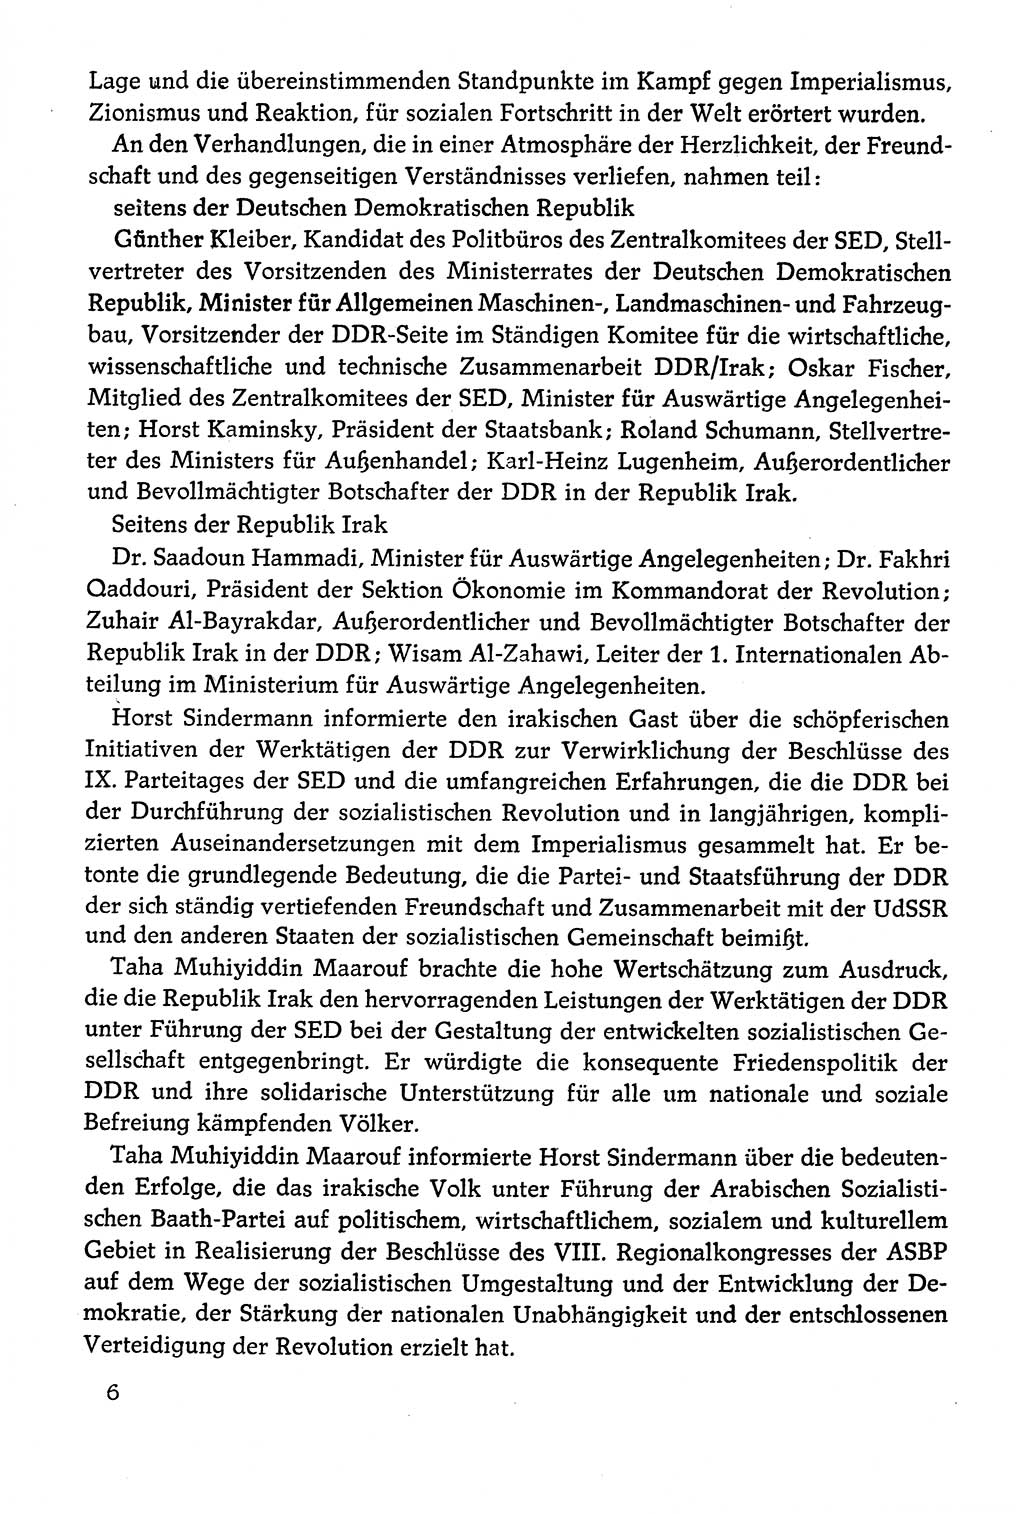 Dokumente der Sozialistischen Einheitspartei Deutschlands (SED) [Deutsche Demokratische Republik (DDR)] 1978-1979, Seite 6 (Dok. SED DDR 1978-1979, S. 6)